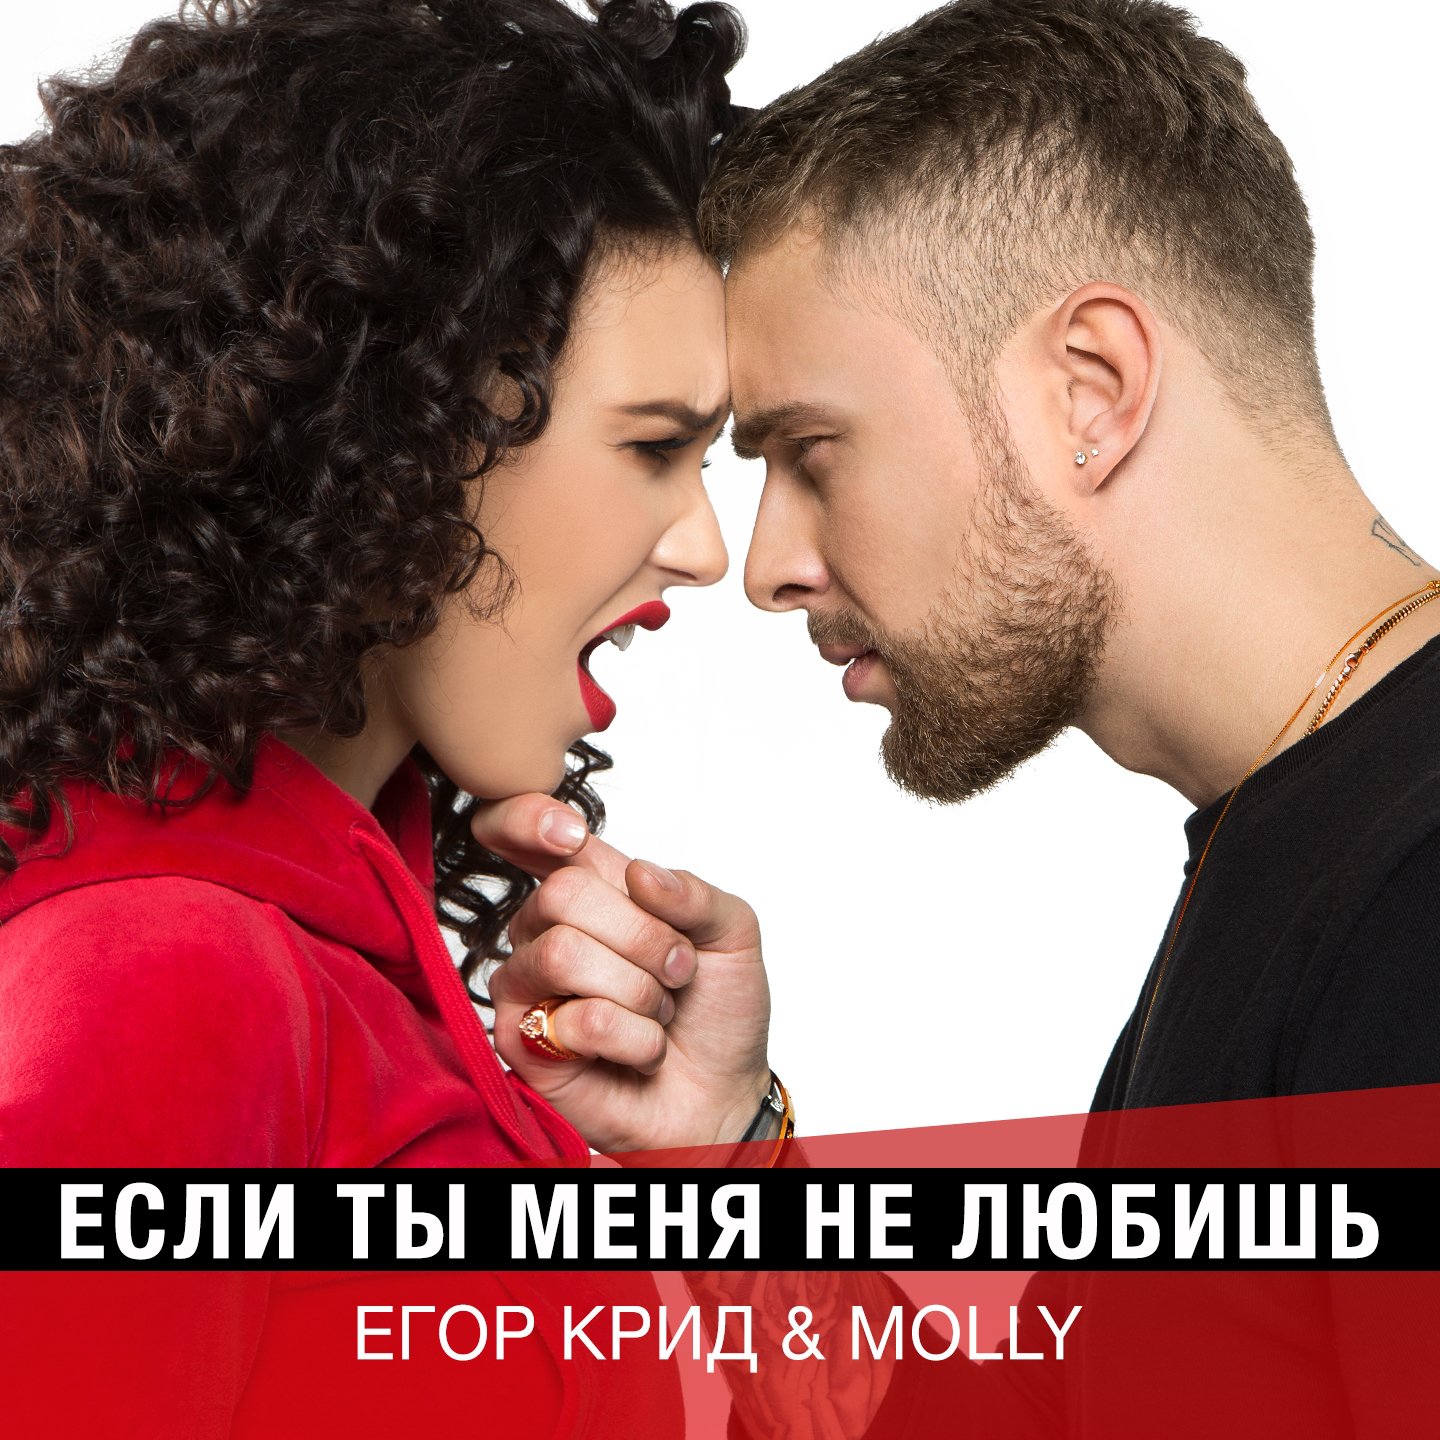 Егор Крид & MOLLY - Если ты меня не любишь